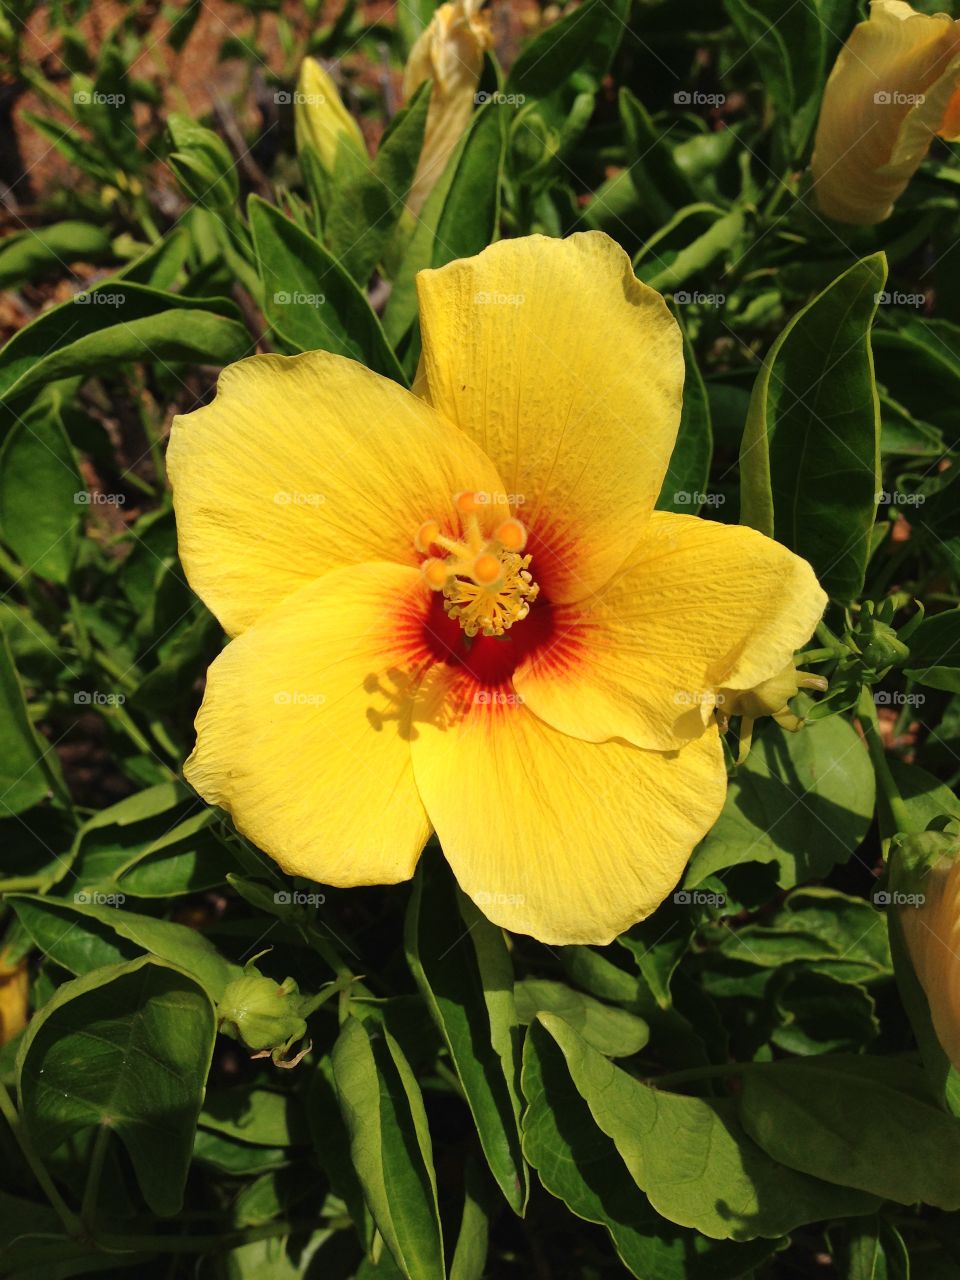 Tropical Hawaiian flower